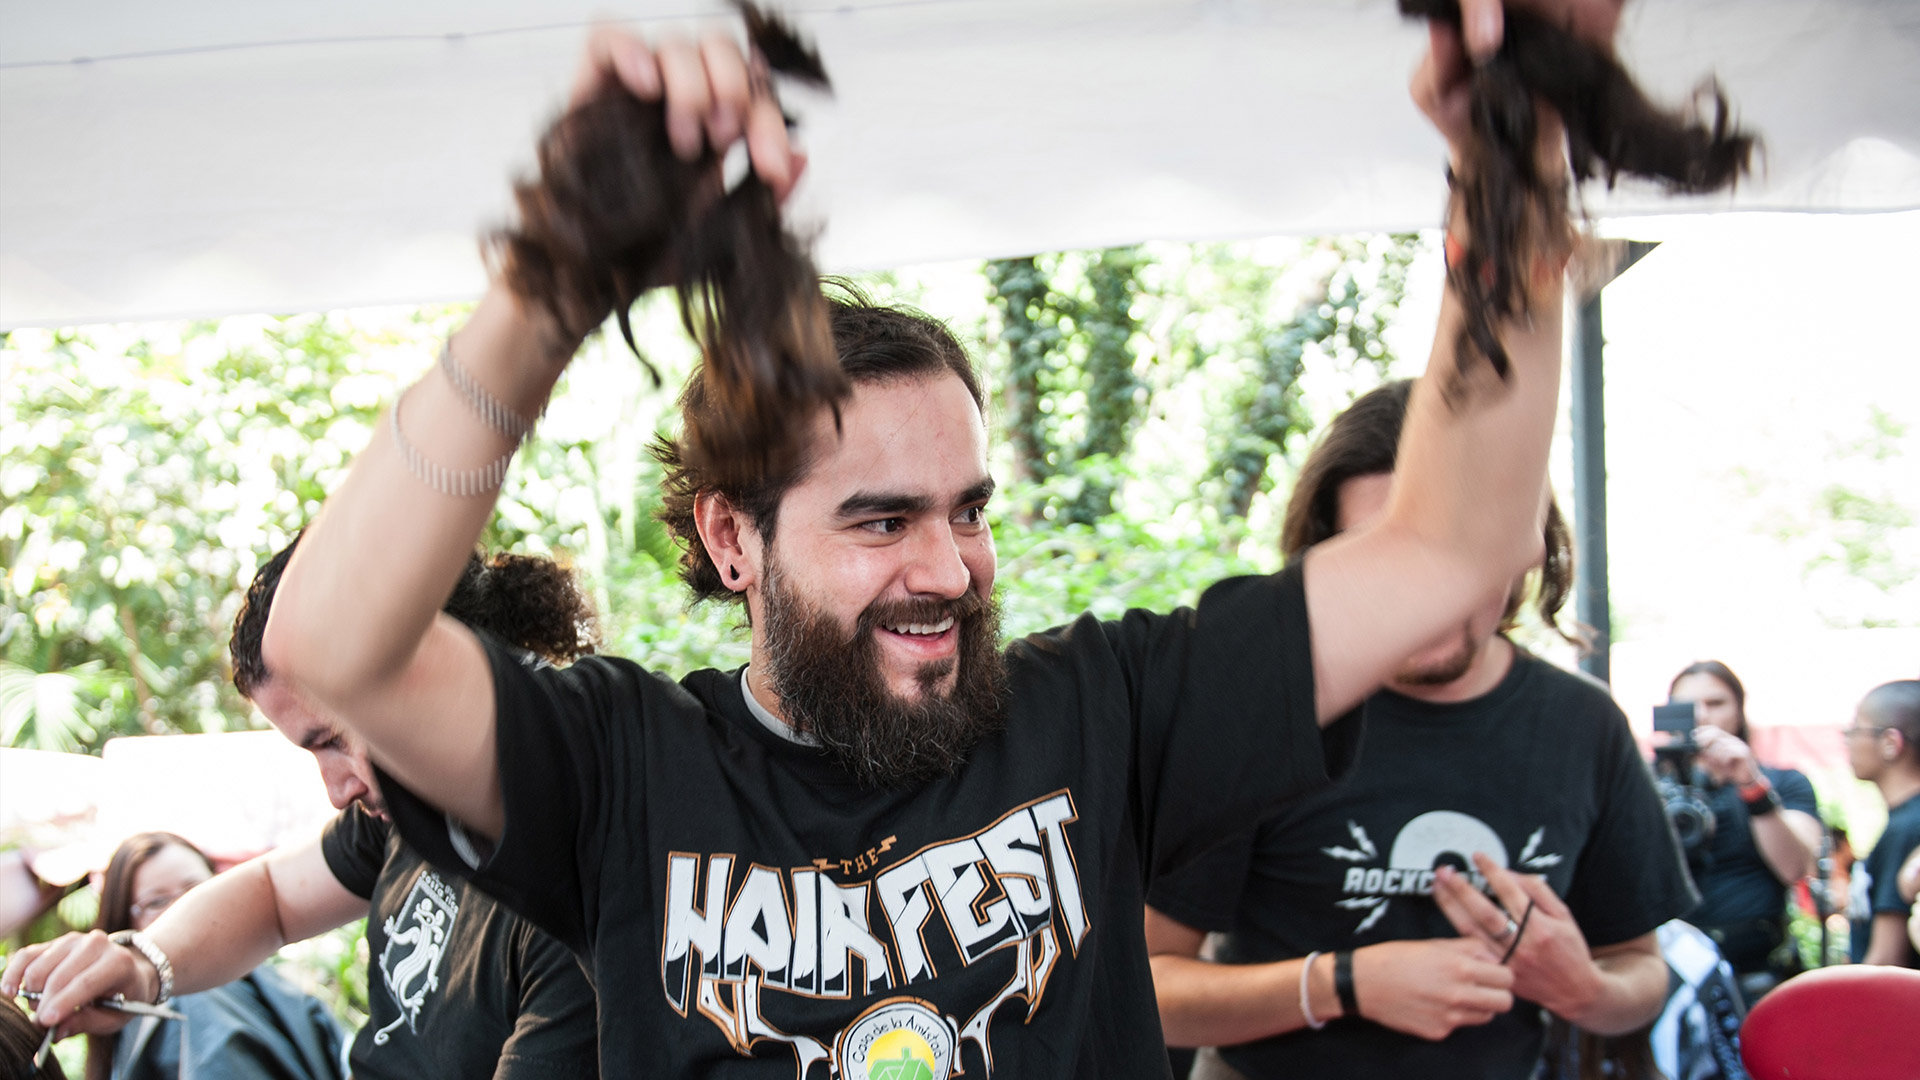 The Hair Fest